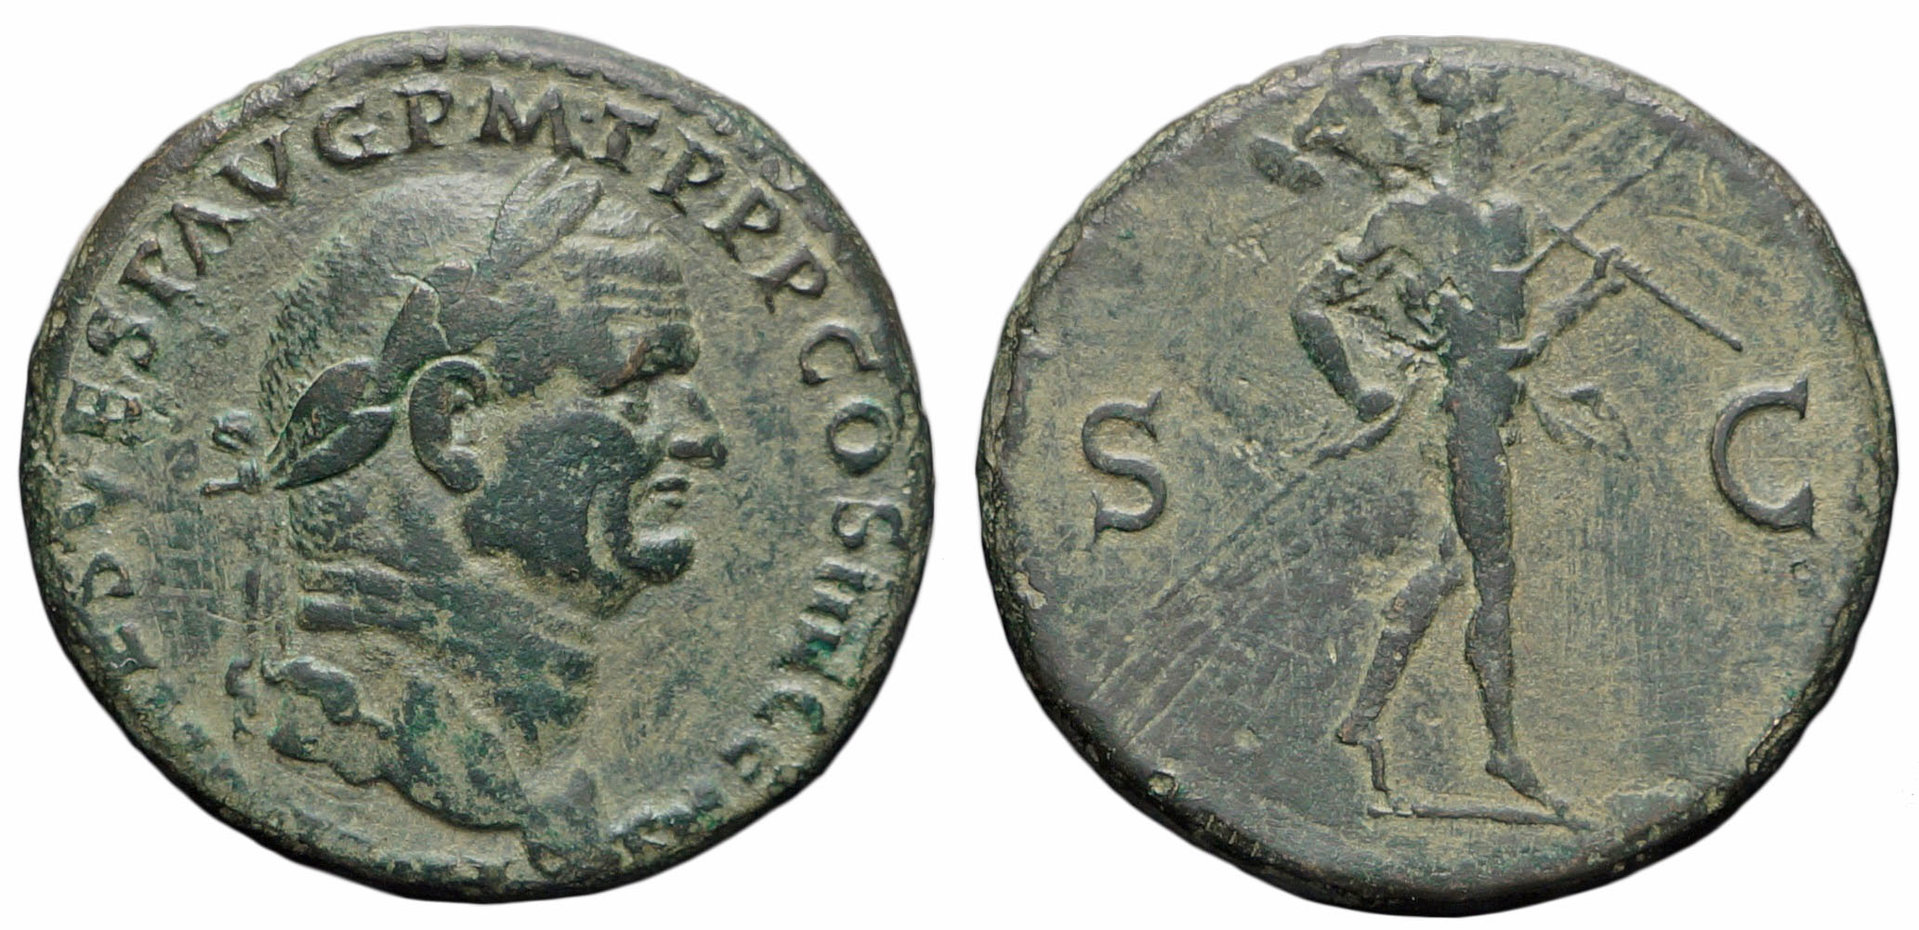 Vespasian COS III CENS | Coin Talk